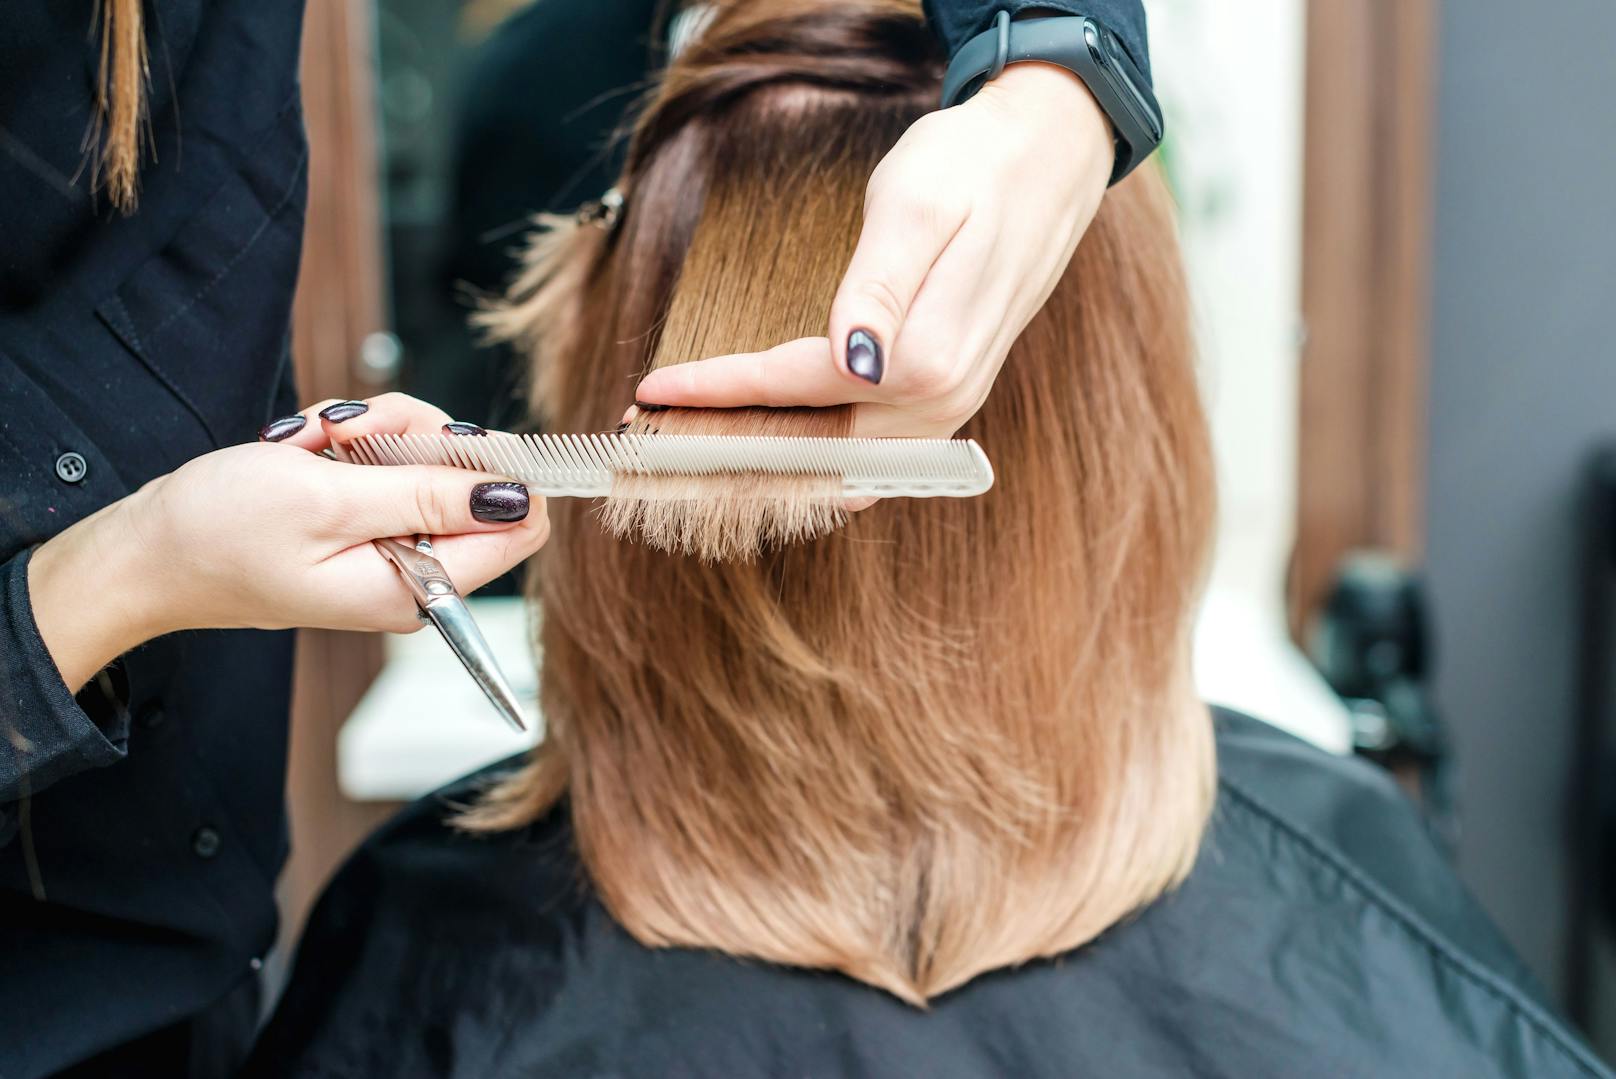 Ist der Friseur-Besuch wirklich so gefährlich? Eine neue Studie liefert Hinweise.